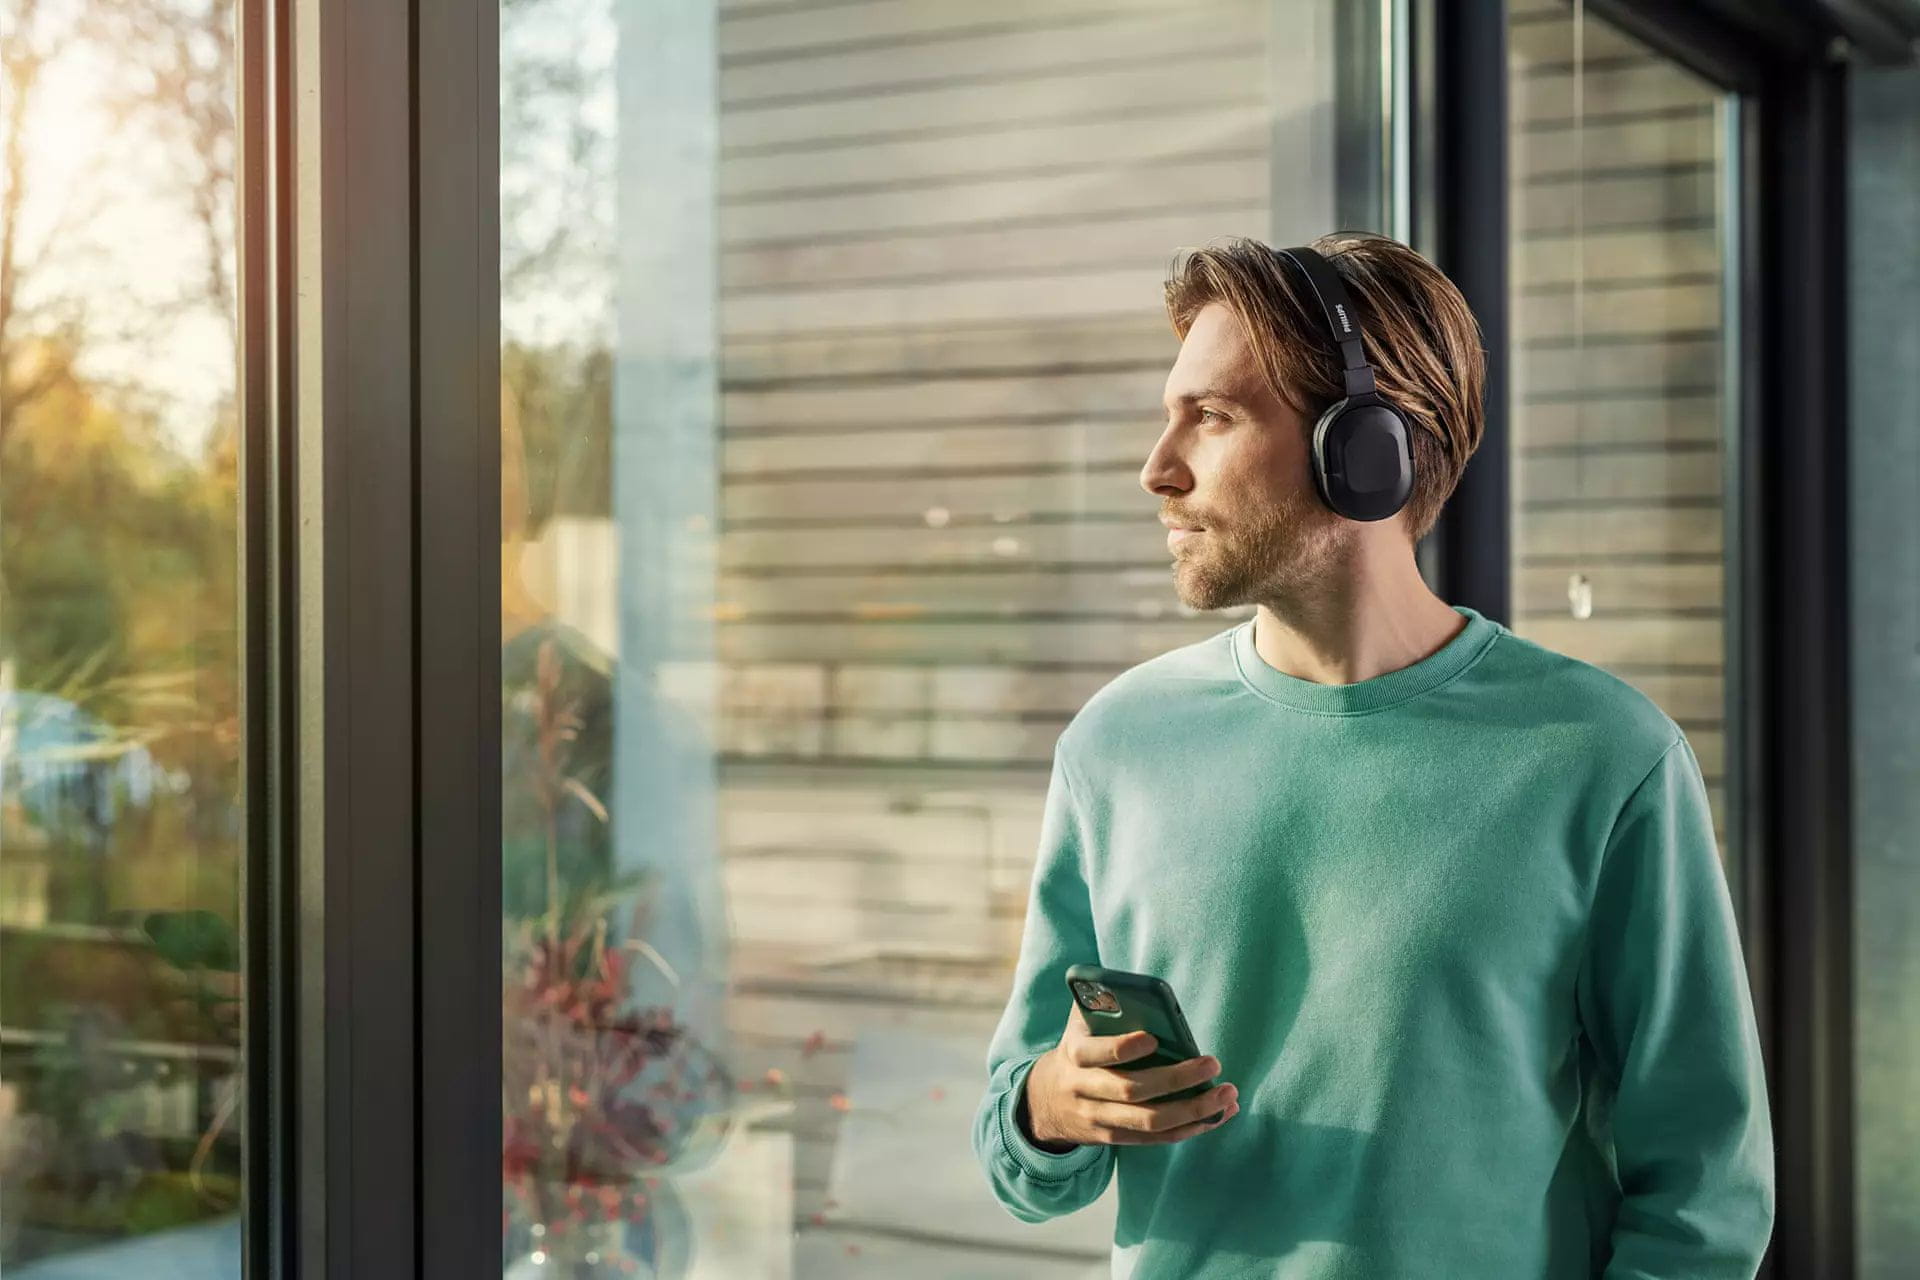  moderní Bluetooth sluchátka philips tah6506 podpora hlasových asistentů skládací konstrukce anc technologie dlouhá výdrž pohodlná na uších výkonné měniče tlačítkové ovládání handsfree funkce moderní design 